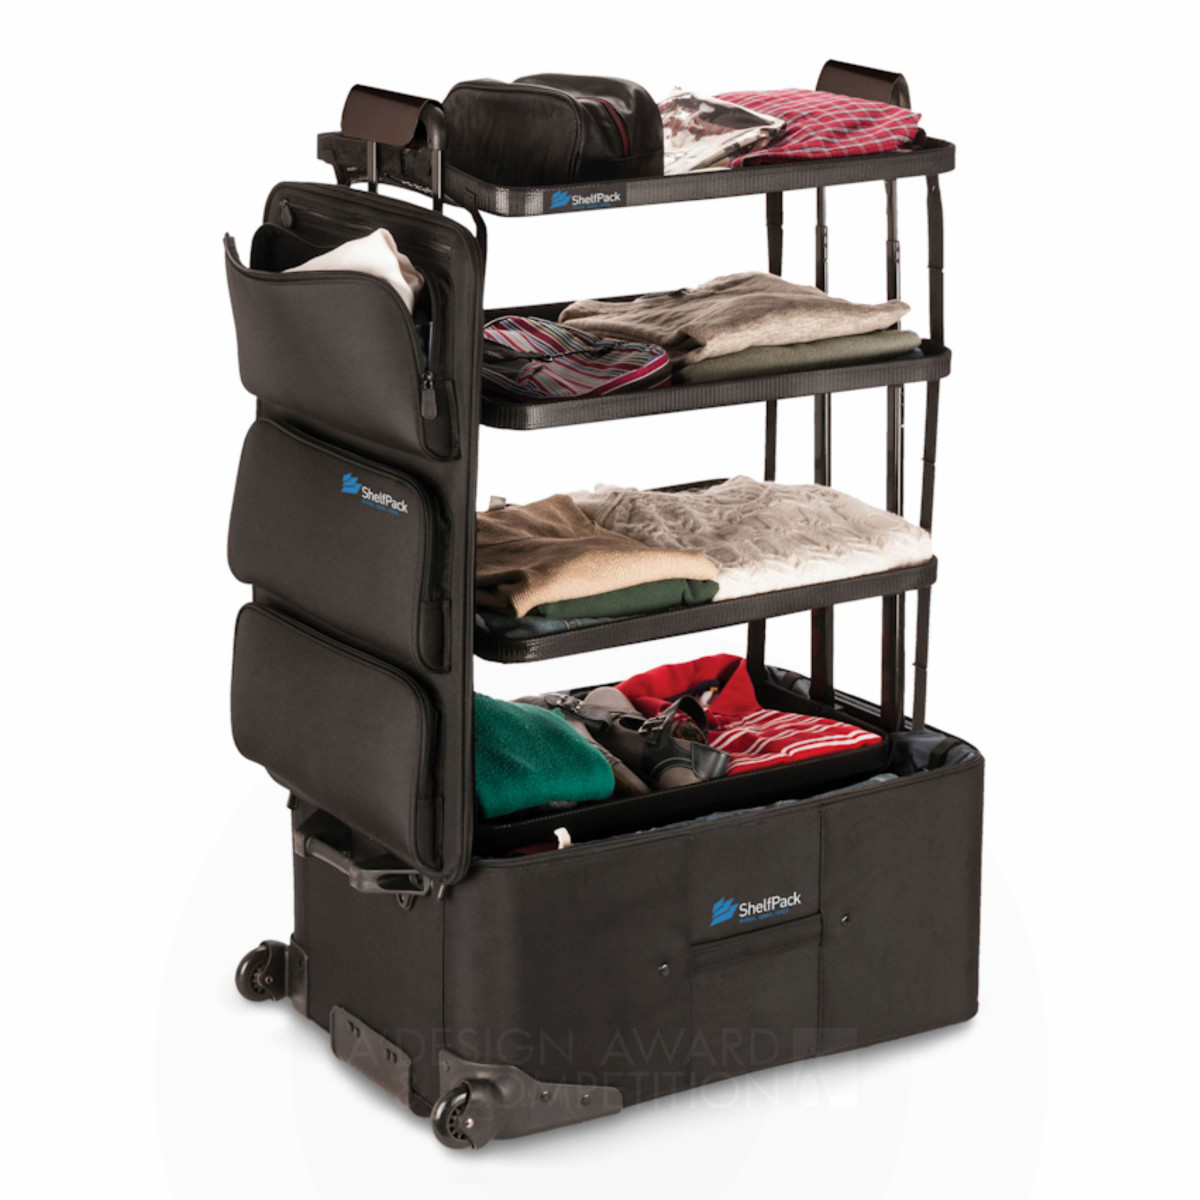 ShelfPack Luggage packing system